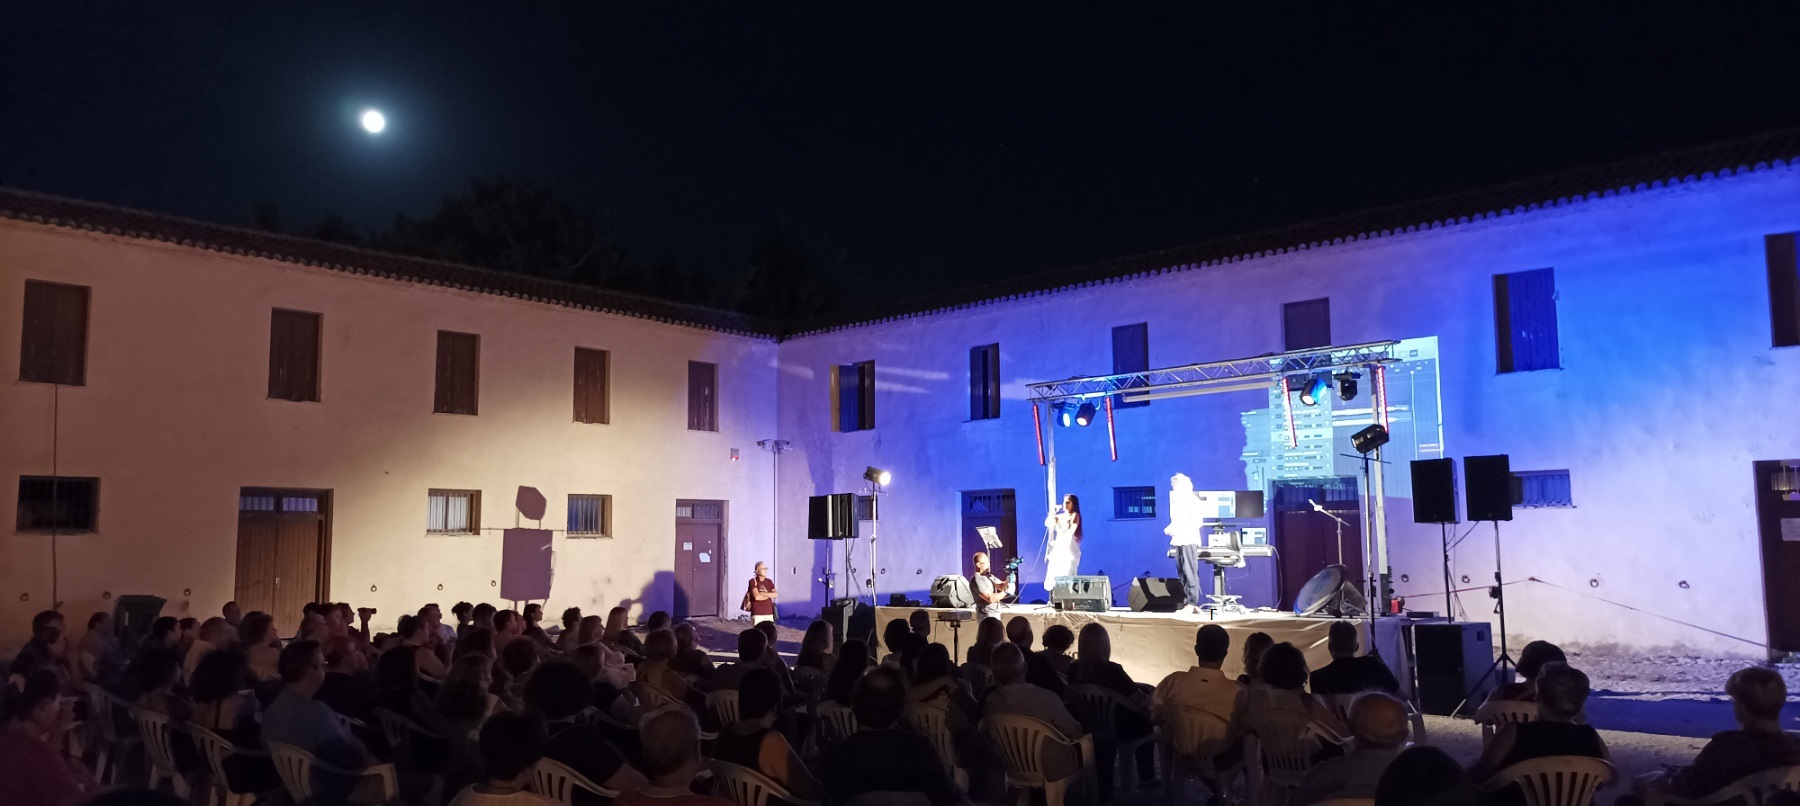 Μαγευτική βραδιά στο Άργος με τη διεθνούς φήμης σοπράνο Georgia Fumanti